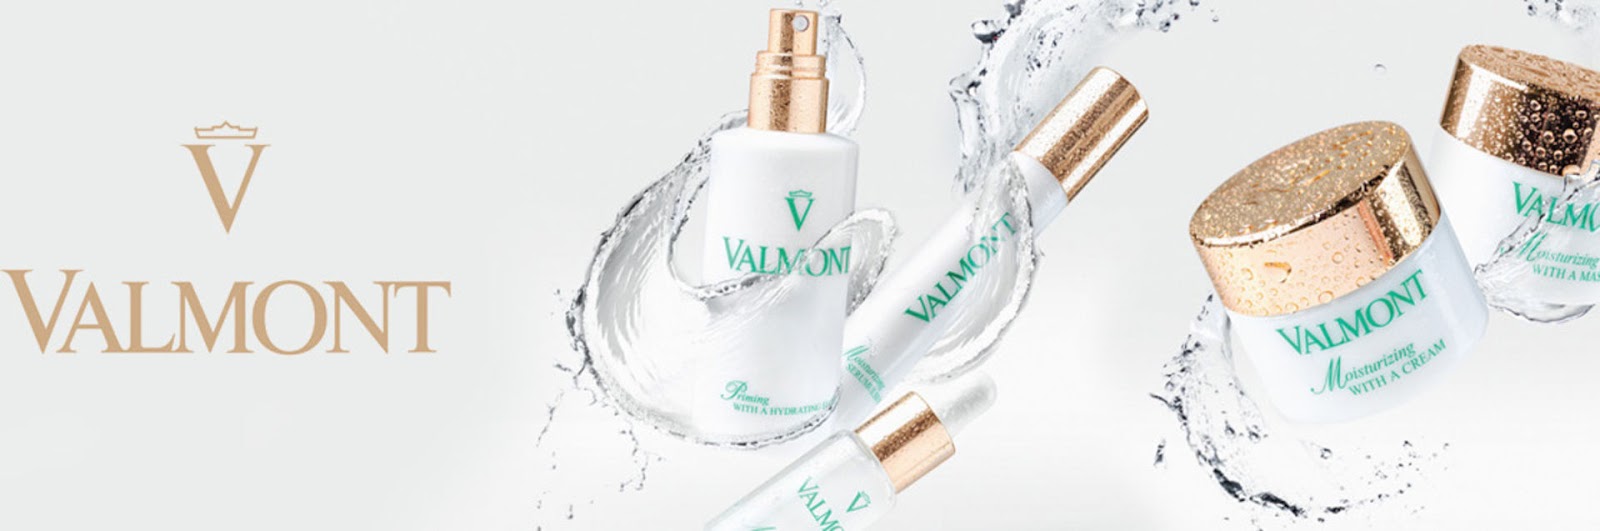 Valmont золушка. Valmont марка крема. Valmont косметика реклама. Valmont логотип. Вальмонт Люкс крем.